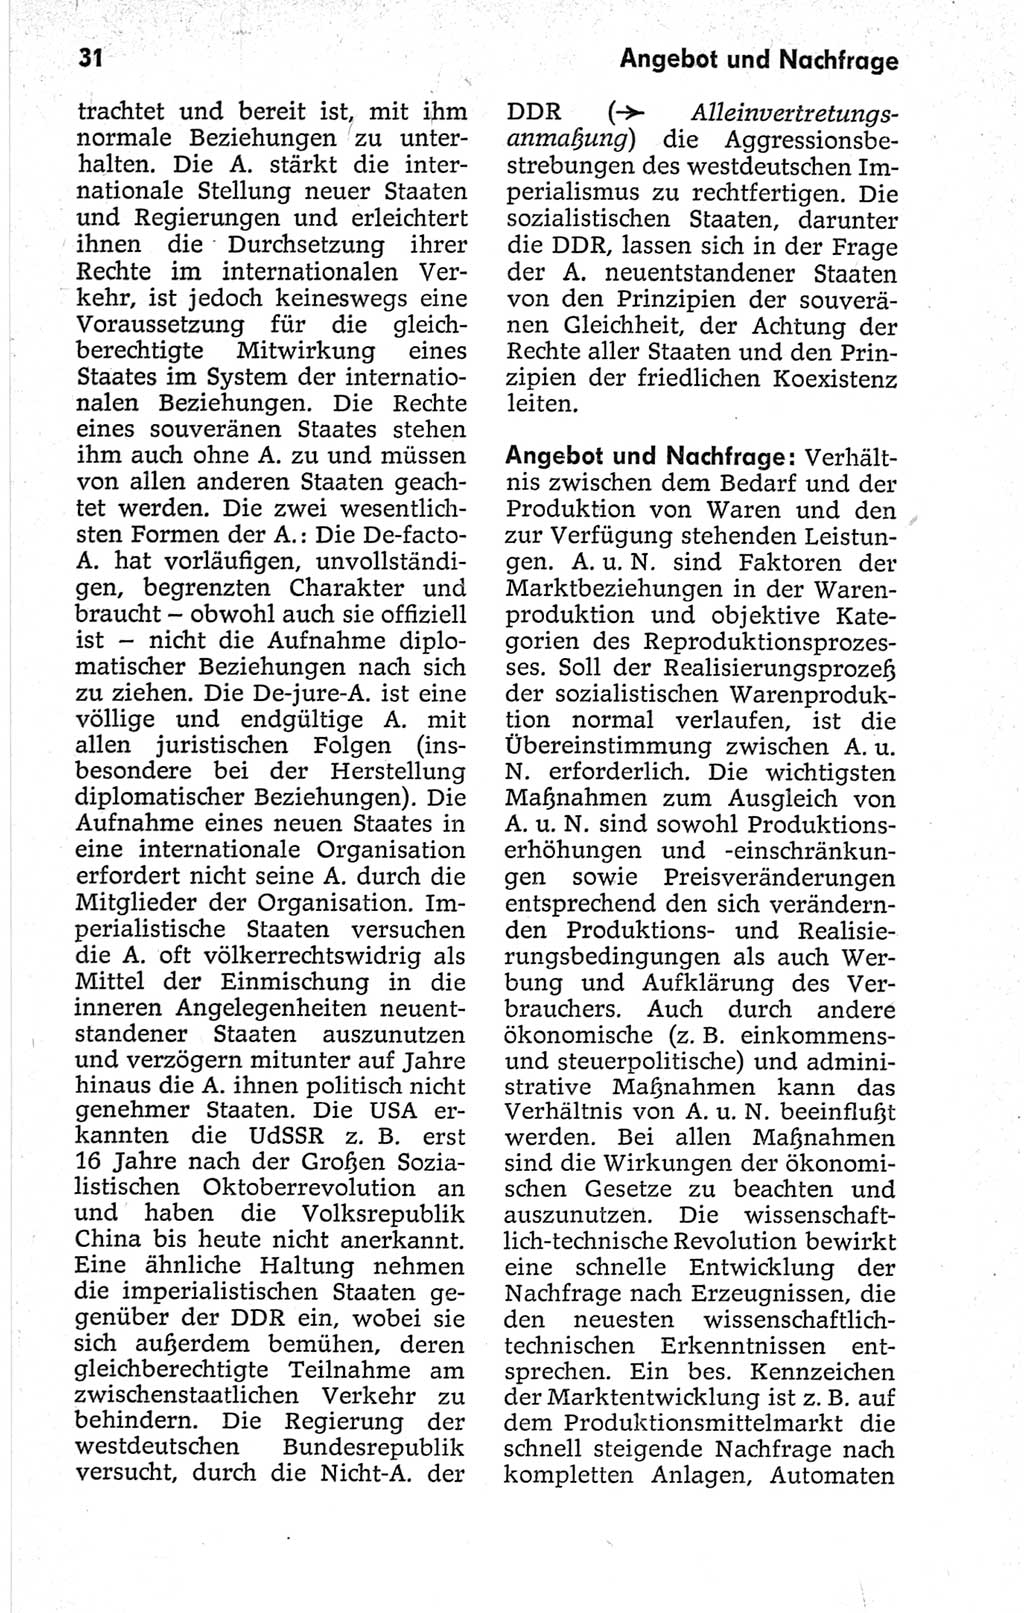 Kleines politisches Wörterbuch [Deutsche Demokratische Republik (DDR)] 1967, Seite 31 (Kl. pol. Wb. DDR 1967, S. 31)